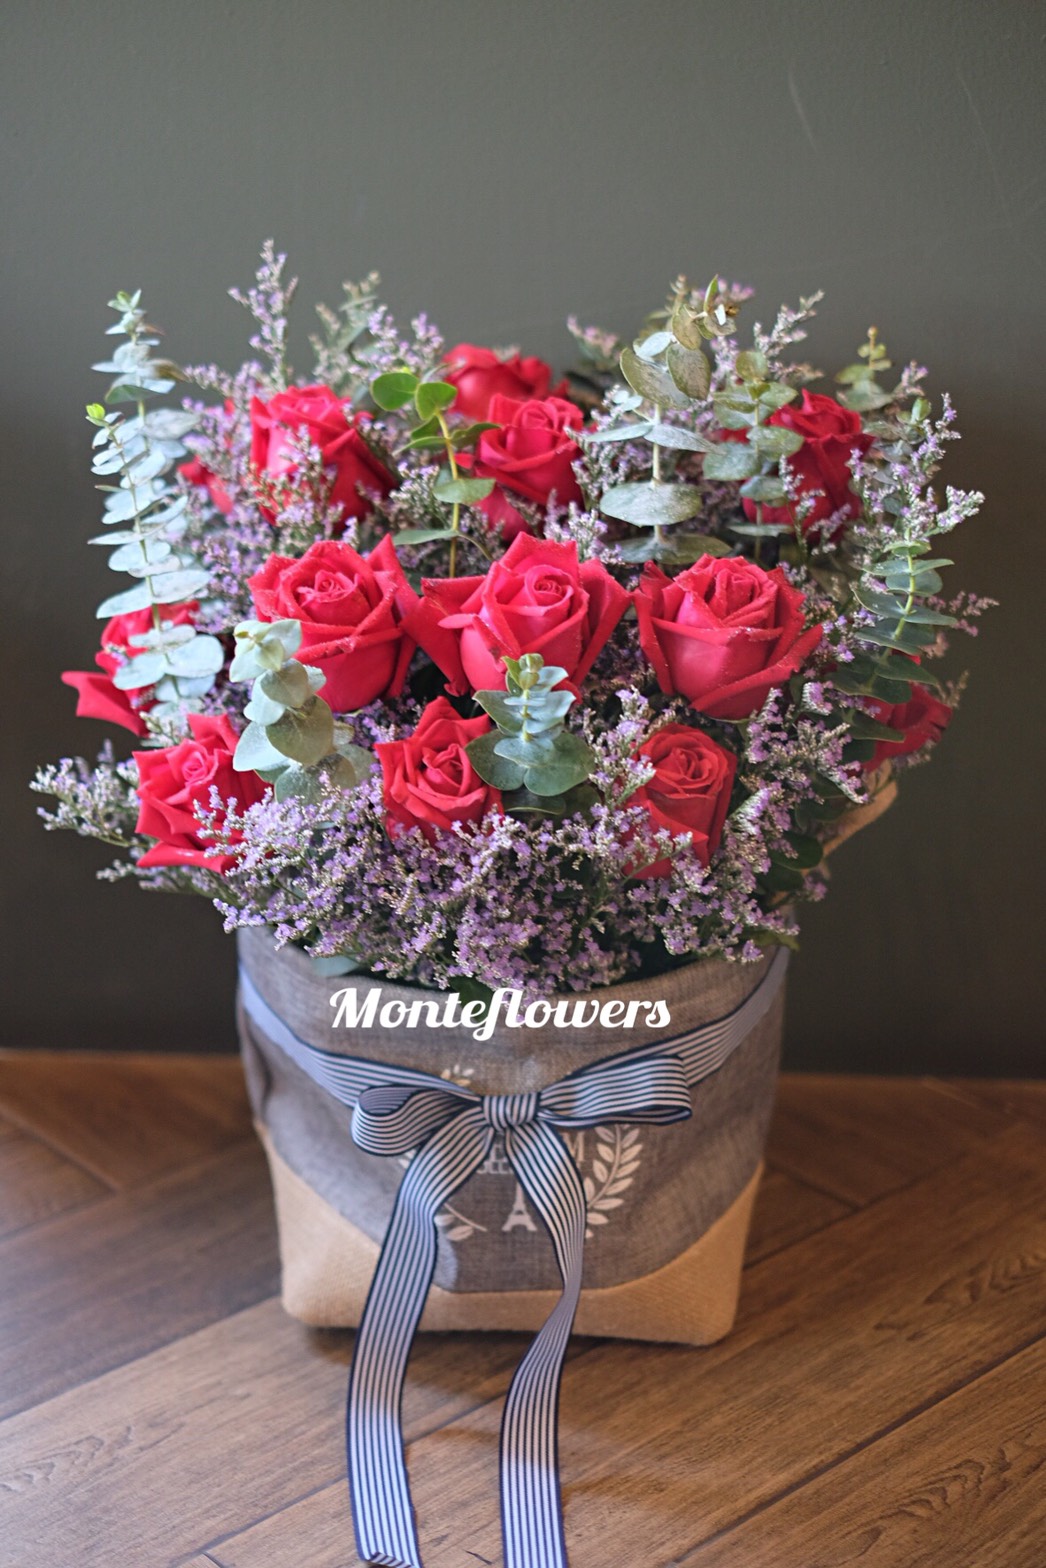 รหัสสินค้า 39    ดอกไม้เยี่ยมผู้ป่วย, ดอกไม้ประกอบไปด้วยดอกไม้โทนสีสดใส่ ให้ความรู้สึกผ่อนคล้ายและเป็นกำลังใจให้ผุ้ป่วยอย่างดีเยี่ยม ส่งฟรัเขต กทม